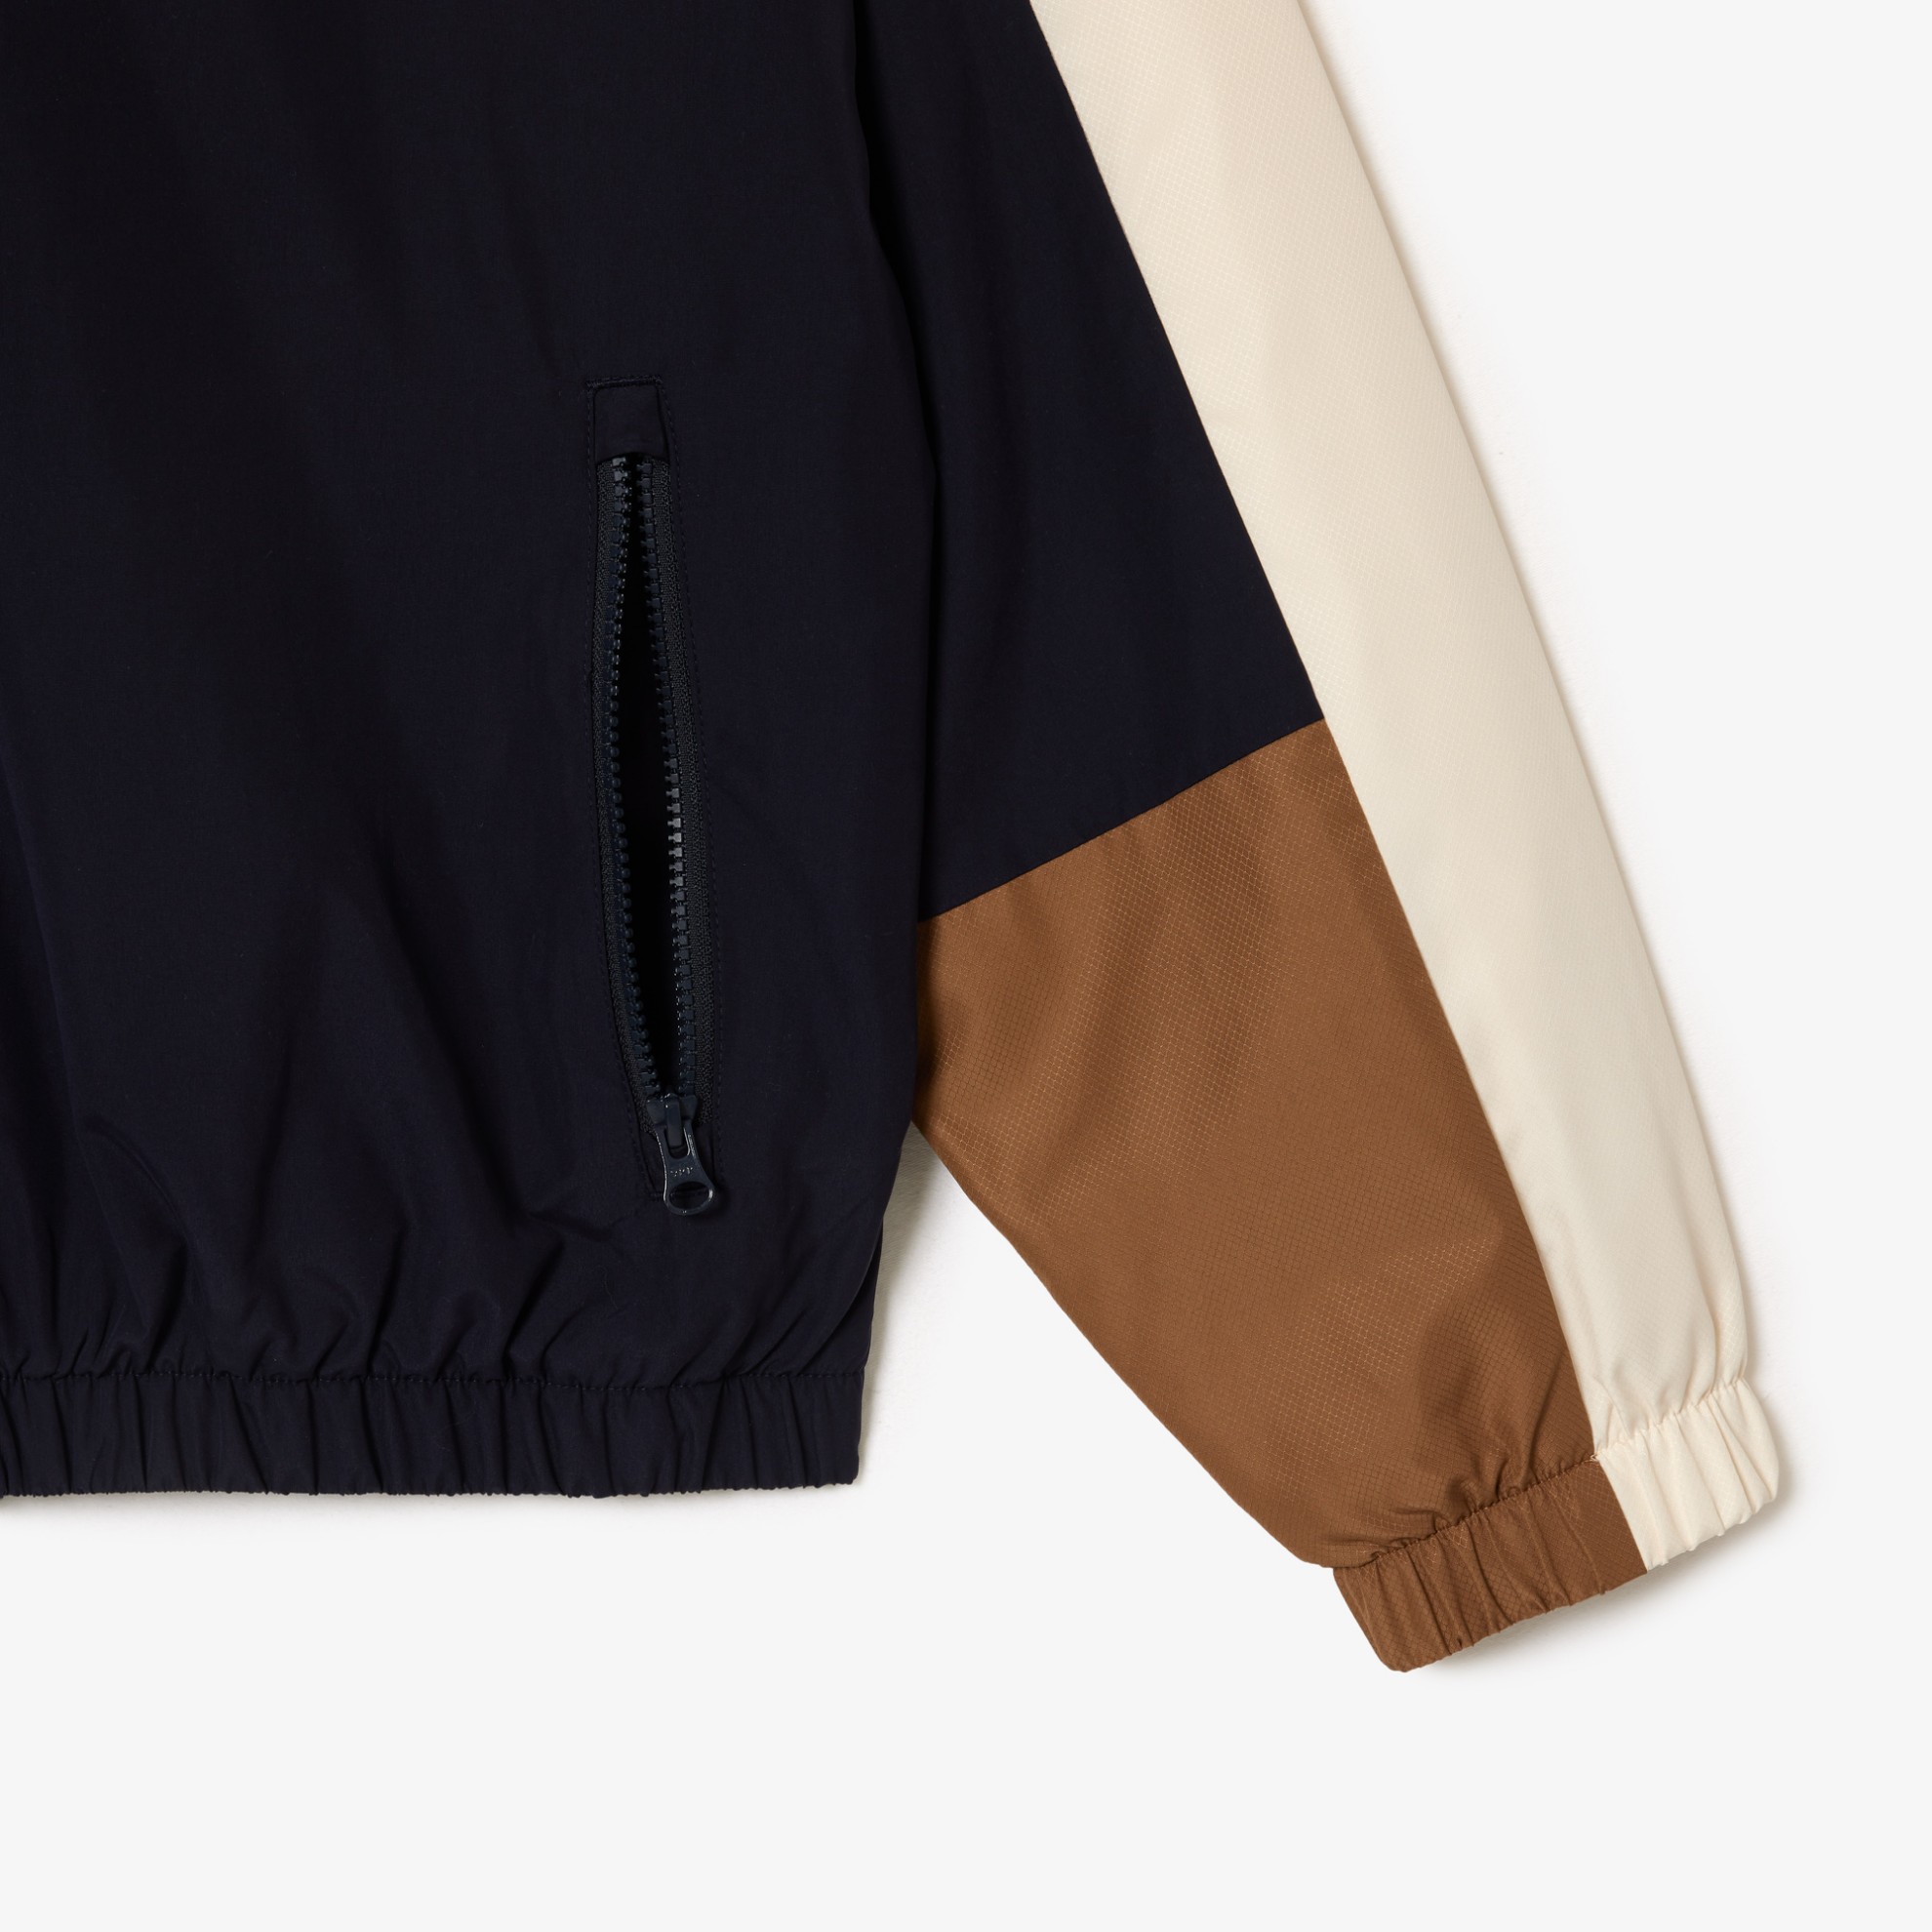 Εικόνα της Ανδρικό Αδιάβροχο Colourblock Sportsuit Jacket